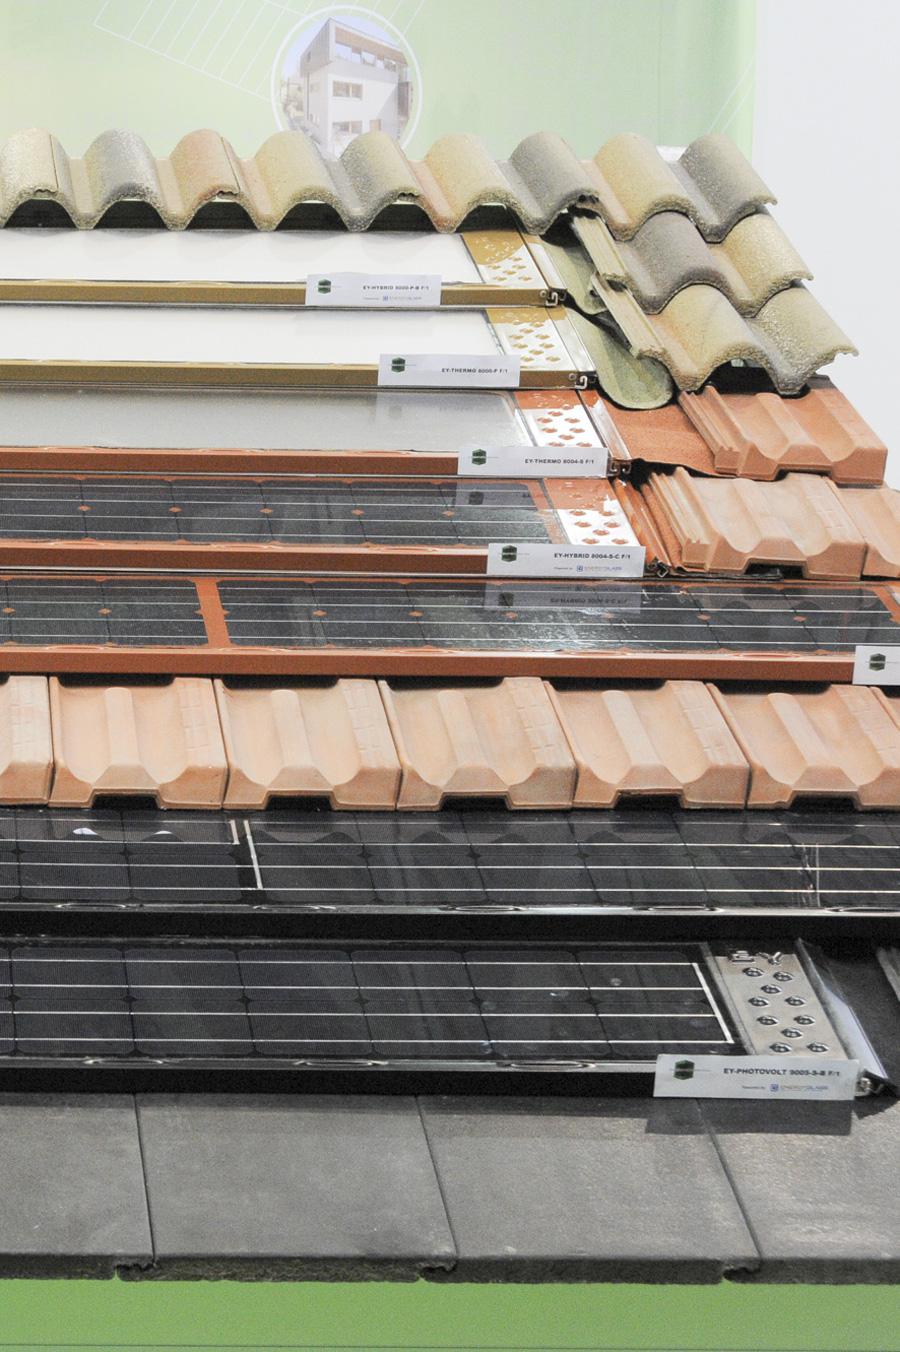 Energyntegration presenta all’interno dello Smart House Living un prodotto innovativo che consiste nell’integrazione delle funzioni fotovoltaica e termica in elementi di copertura, nella tonalità di colore desiderata, montati direttamente sulla orditura del tetto.